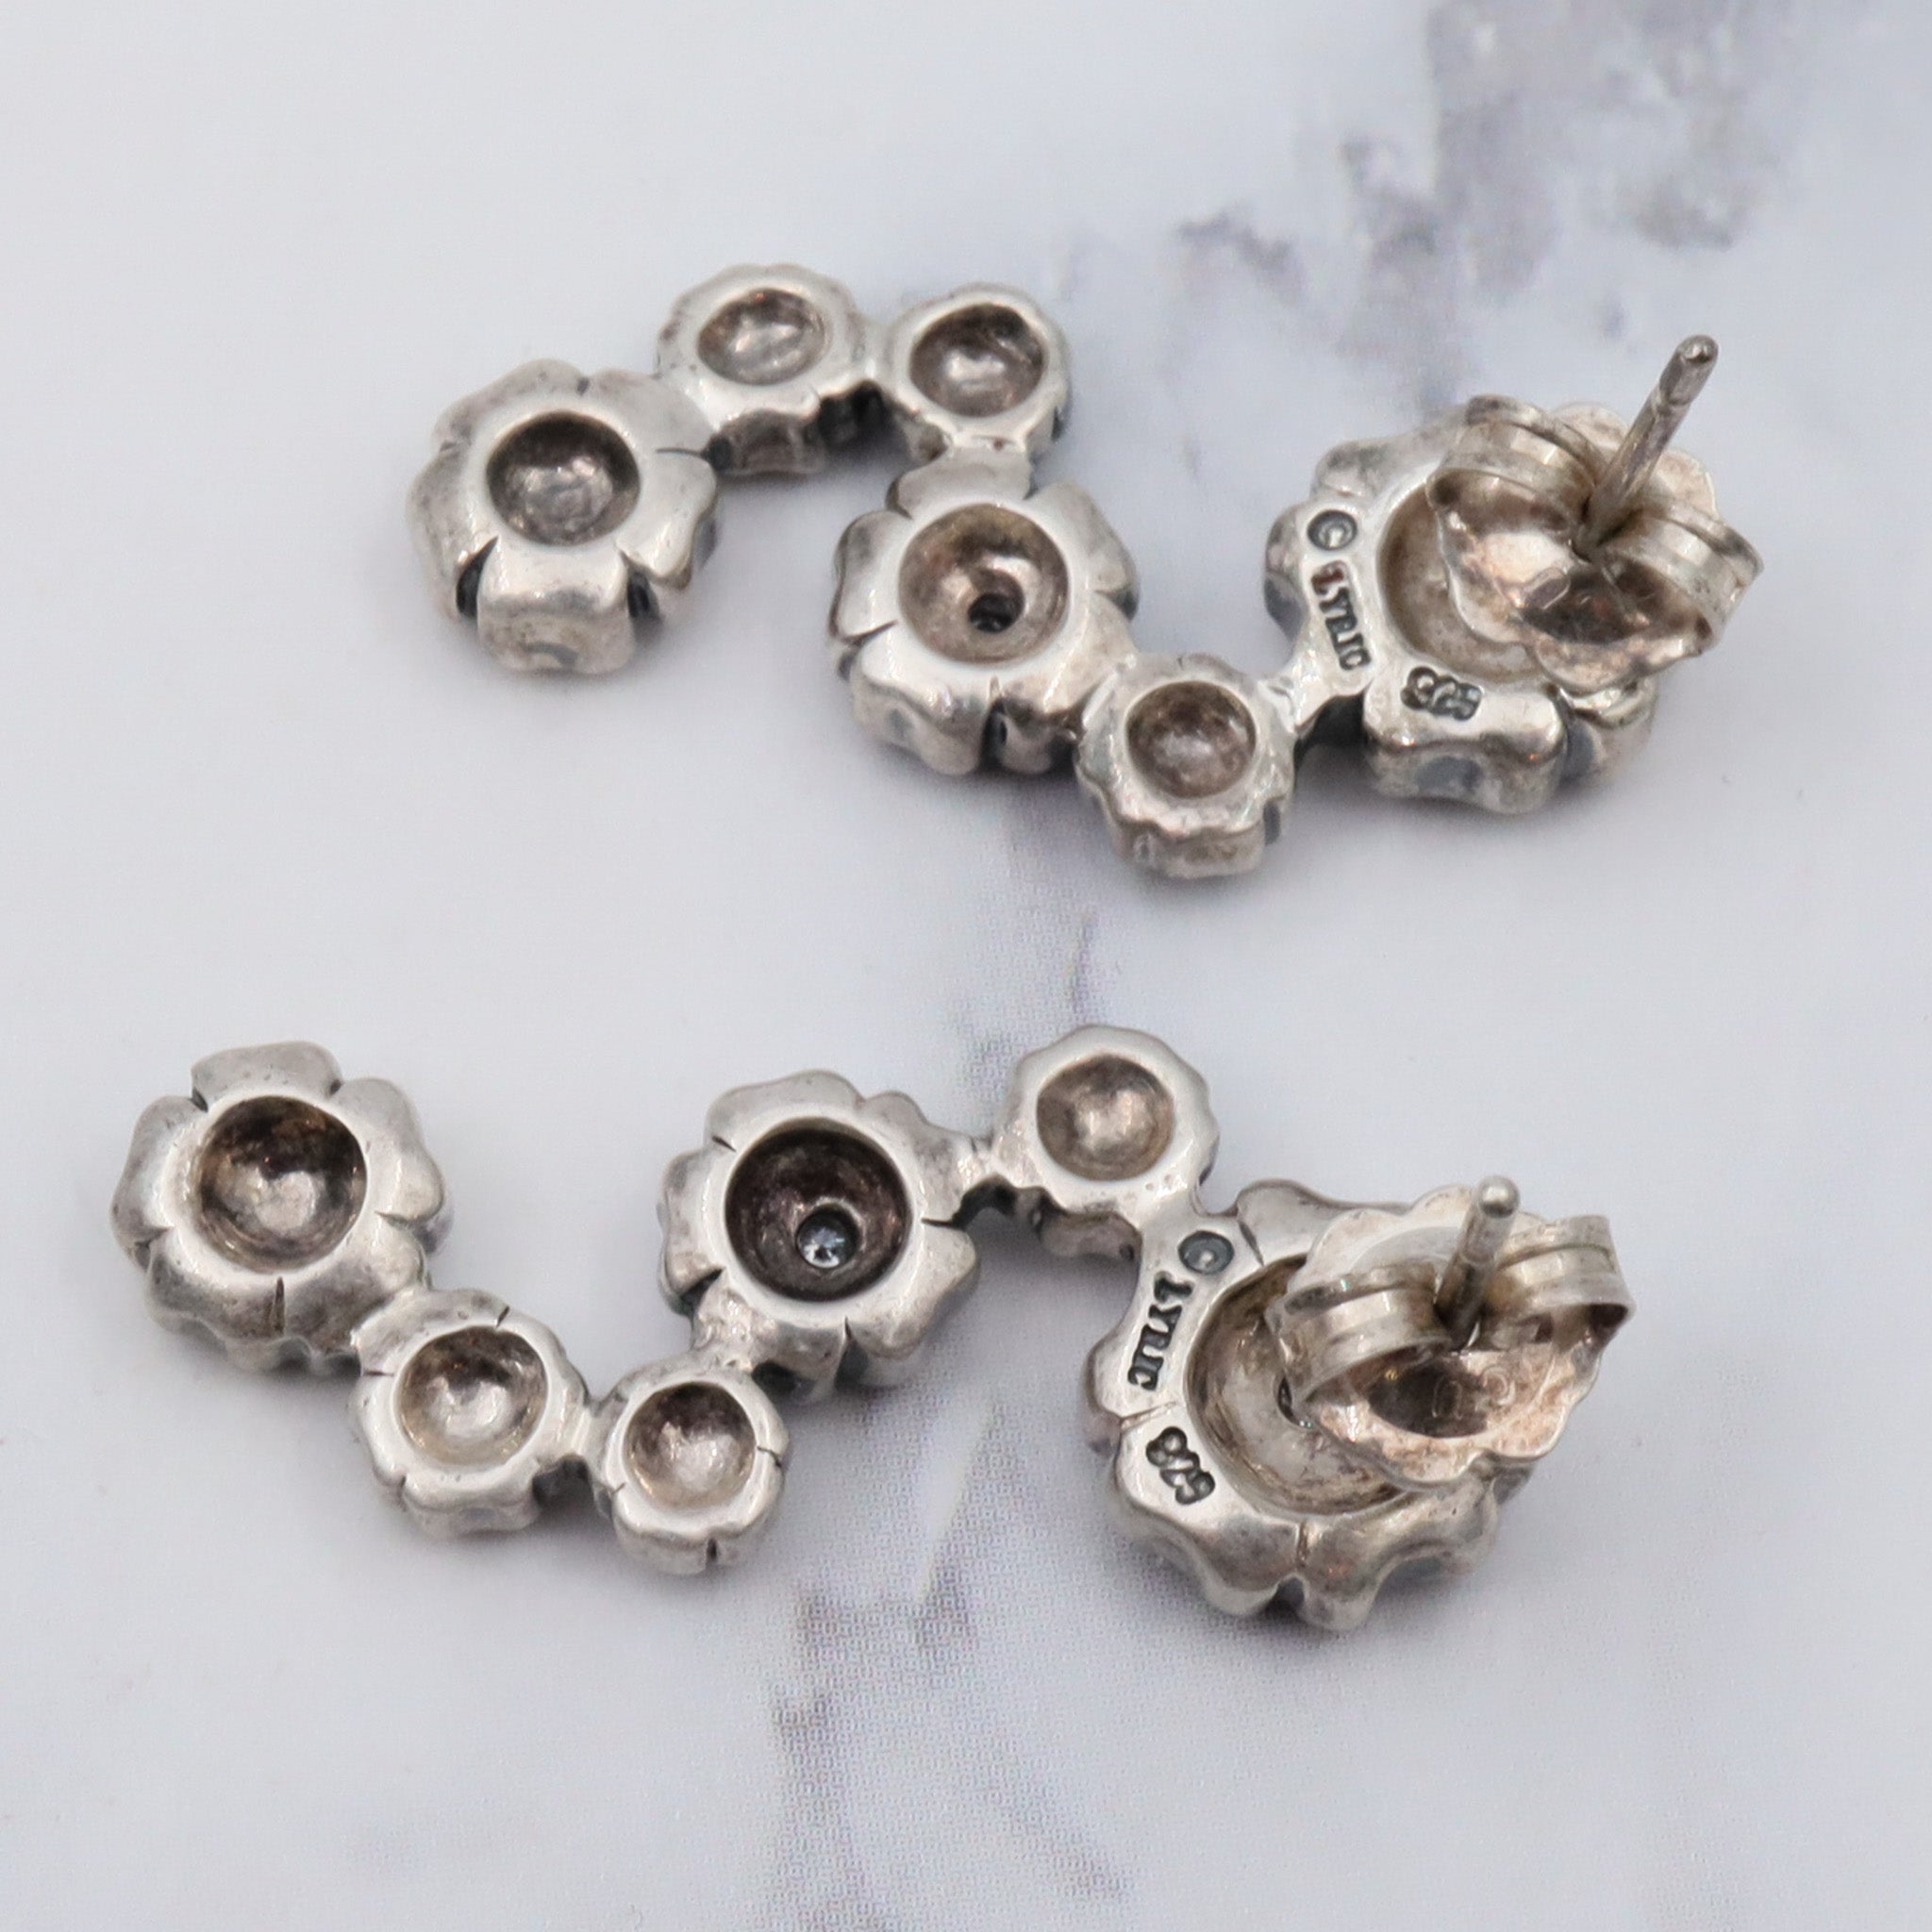 Vintage sterling & diamond flower earrings by “Lyric”